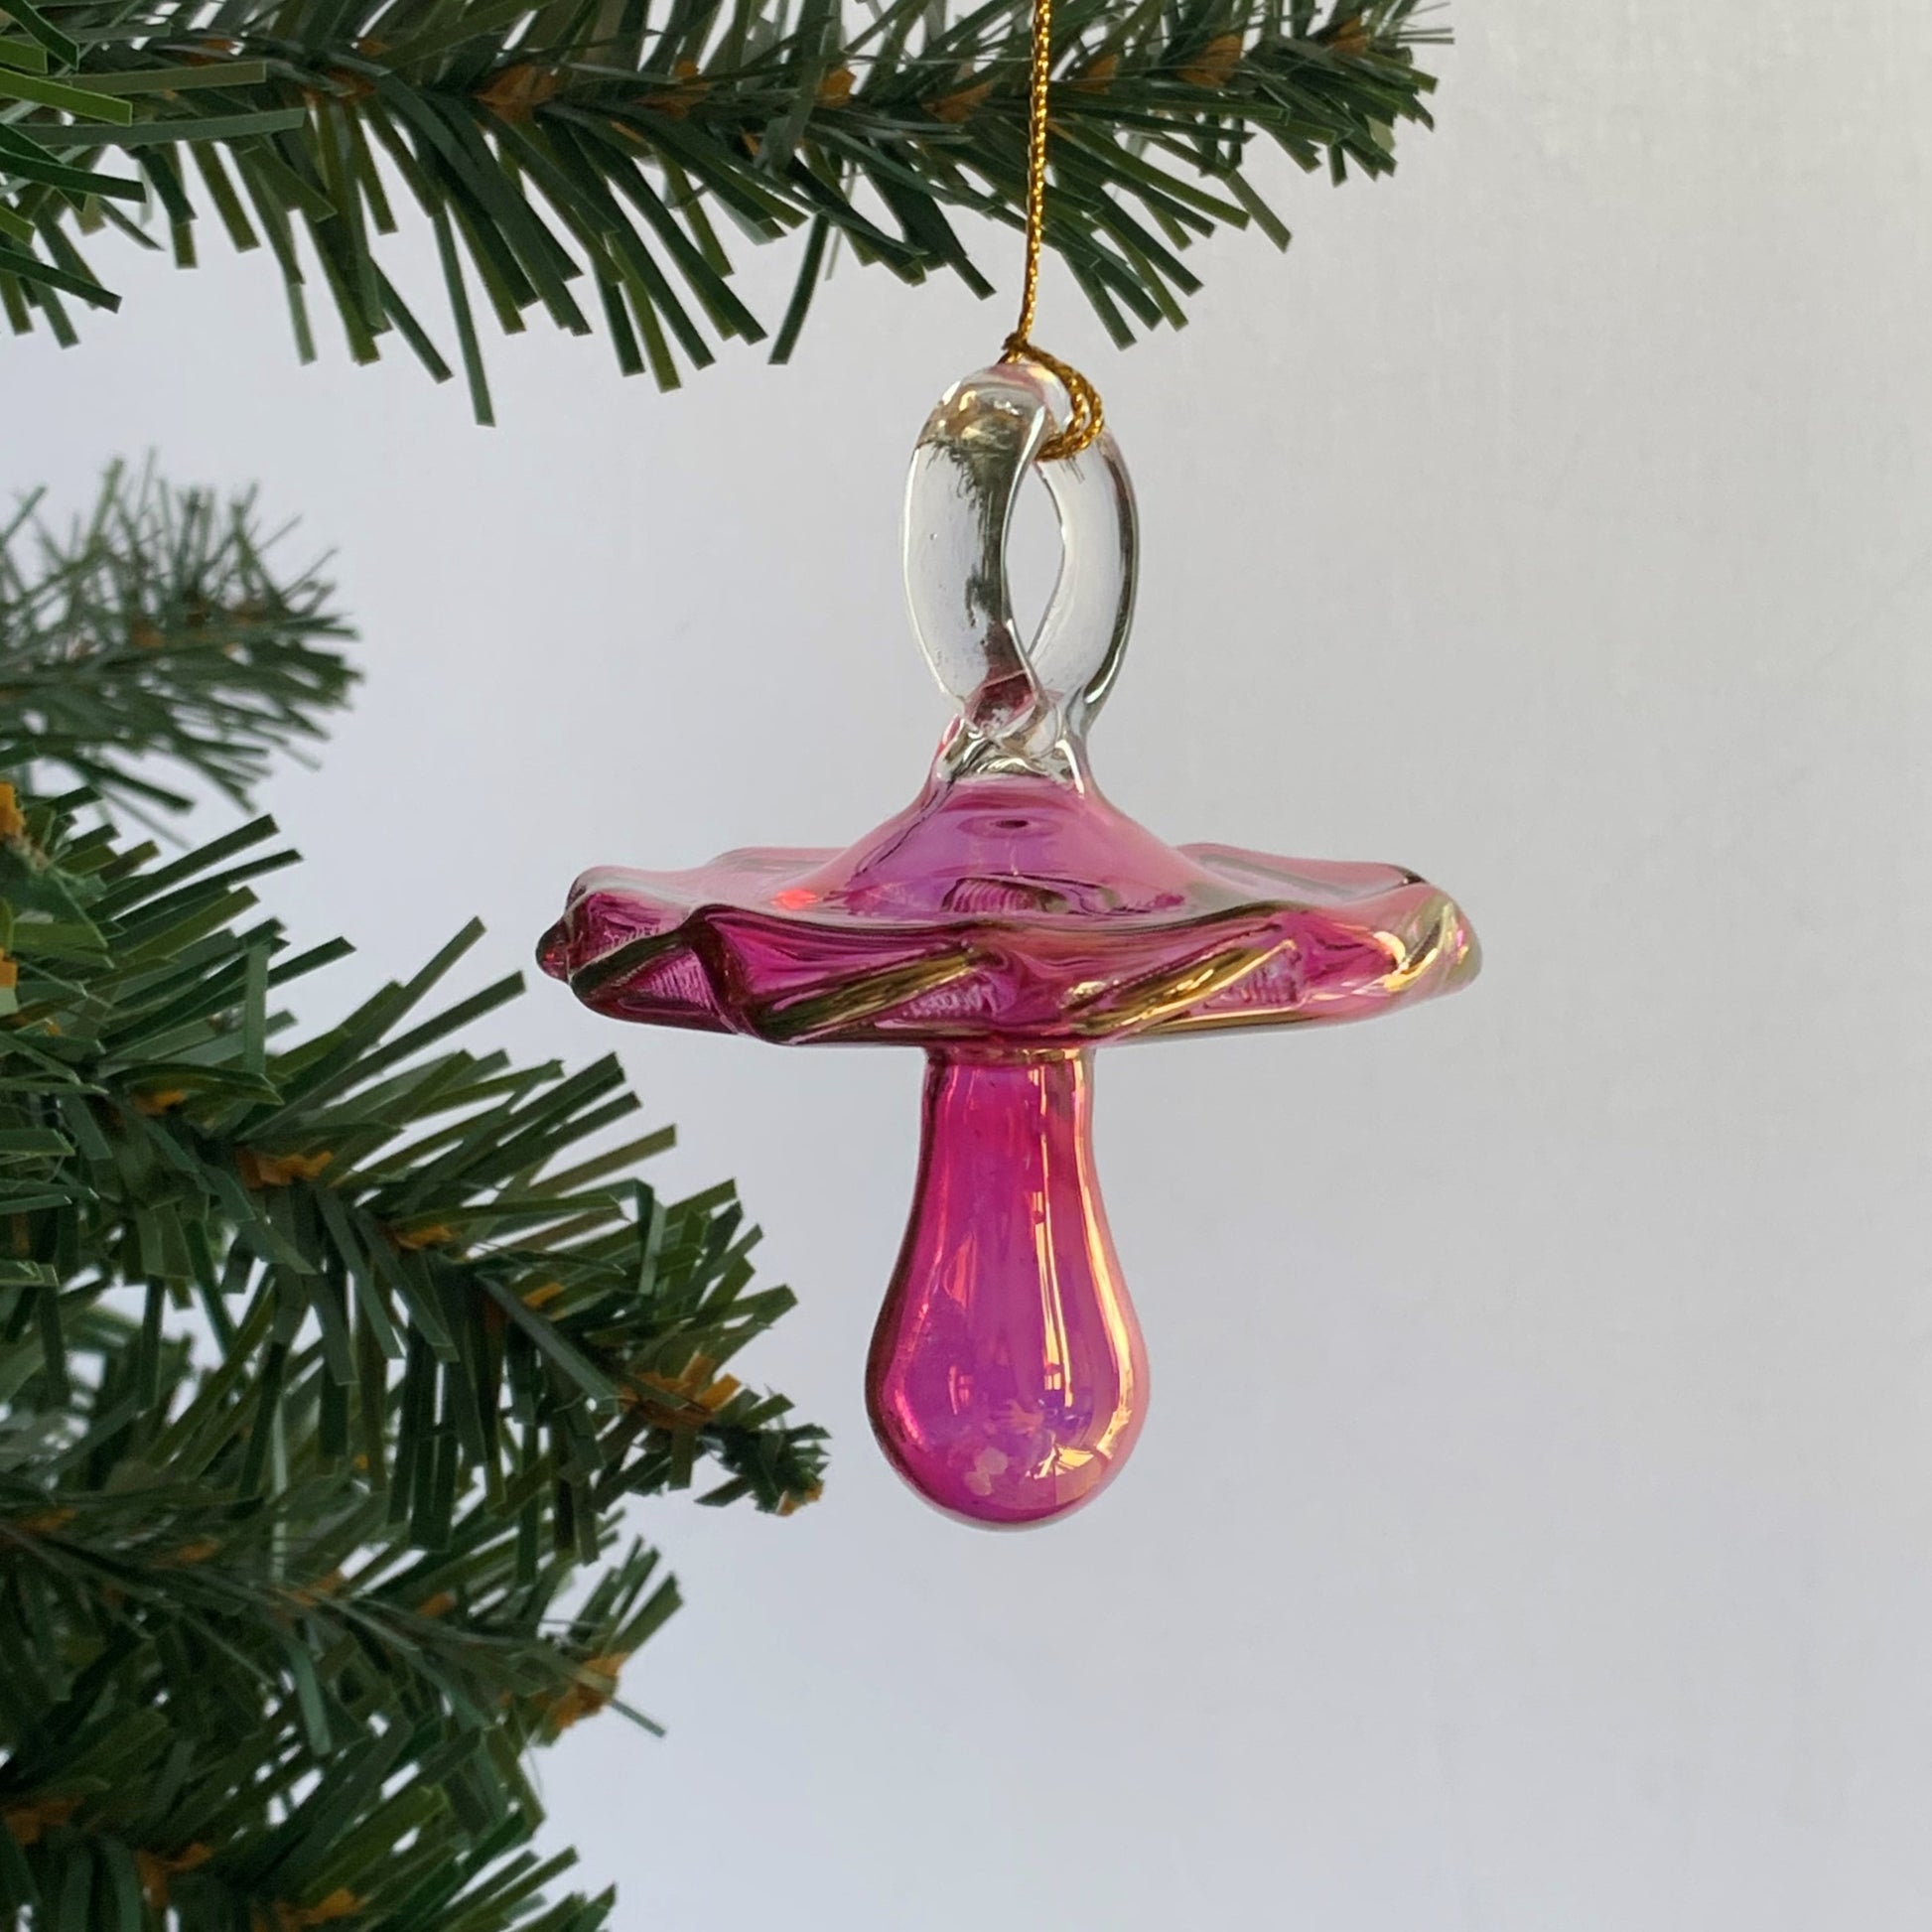 Fair Trade Blown Glass Ornament - Pacifier: Pink